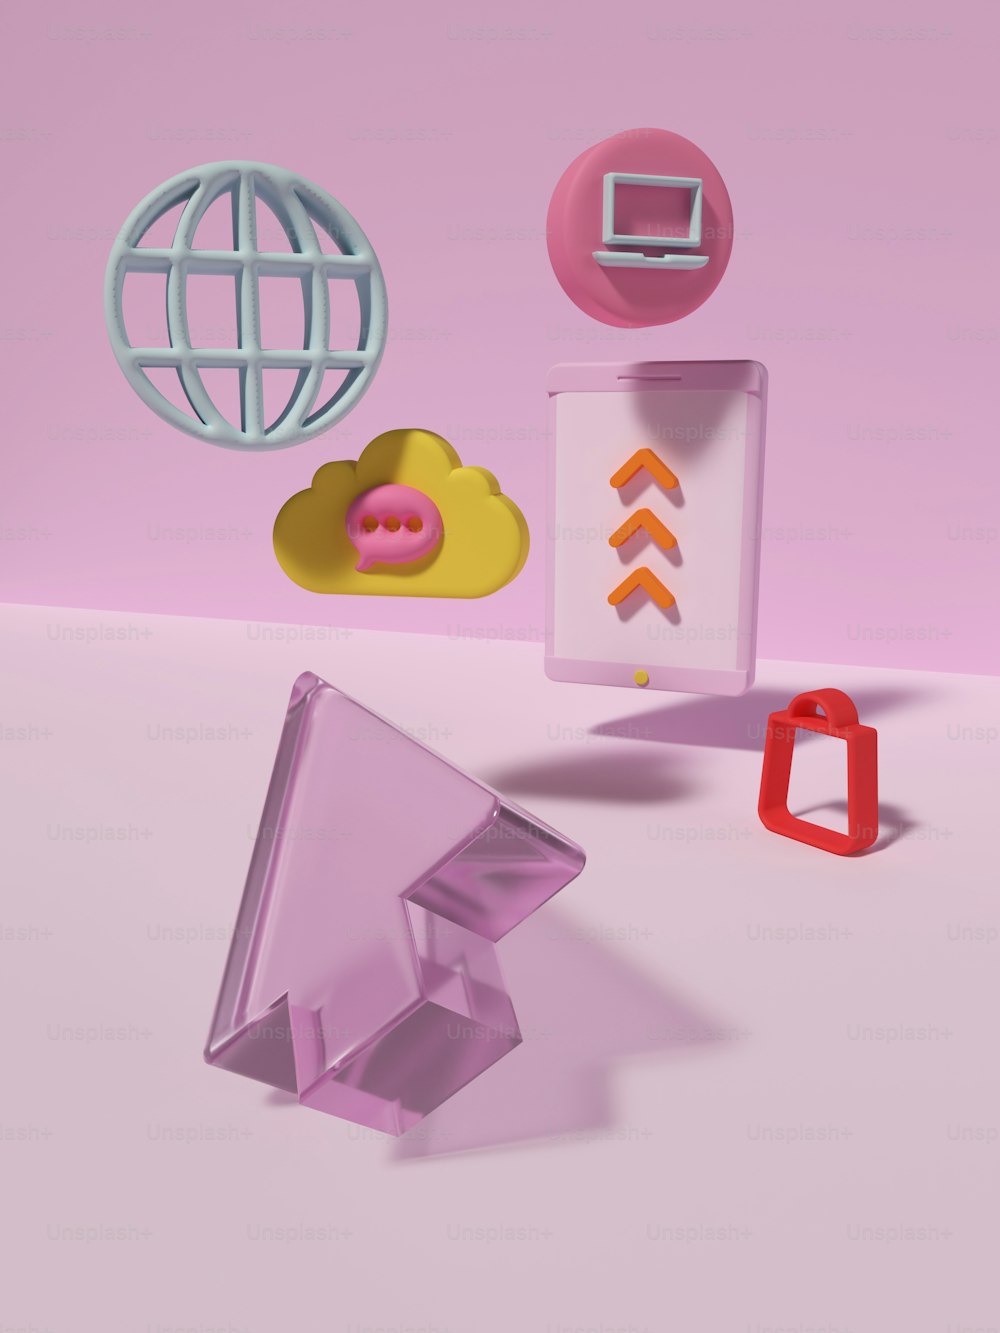 Un gruppo di oggetti che si trovano su una superficie rosa